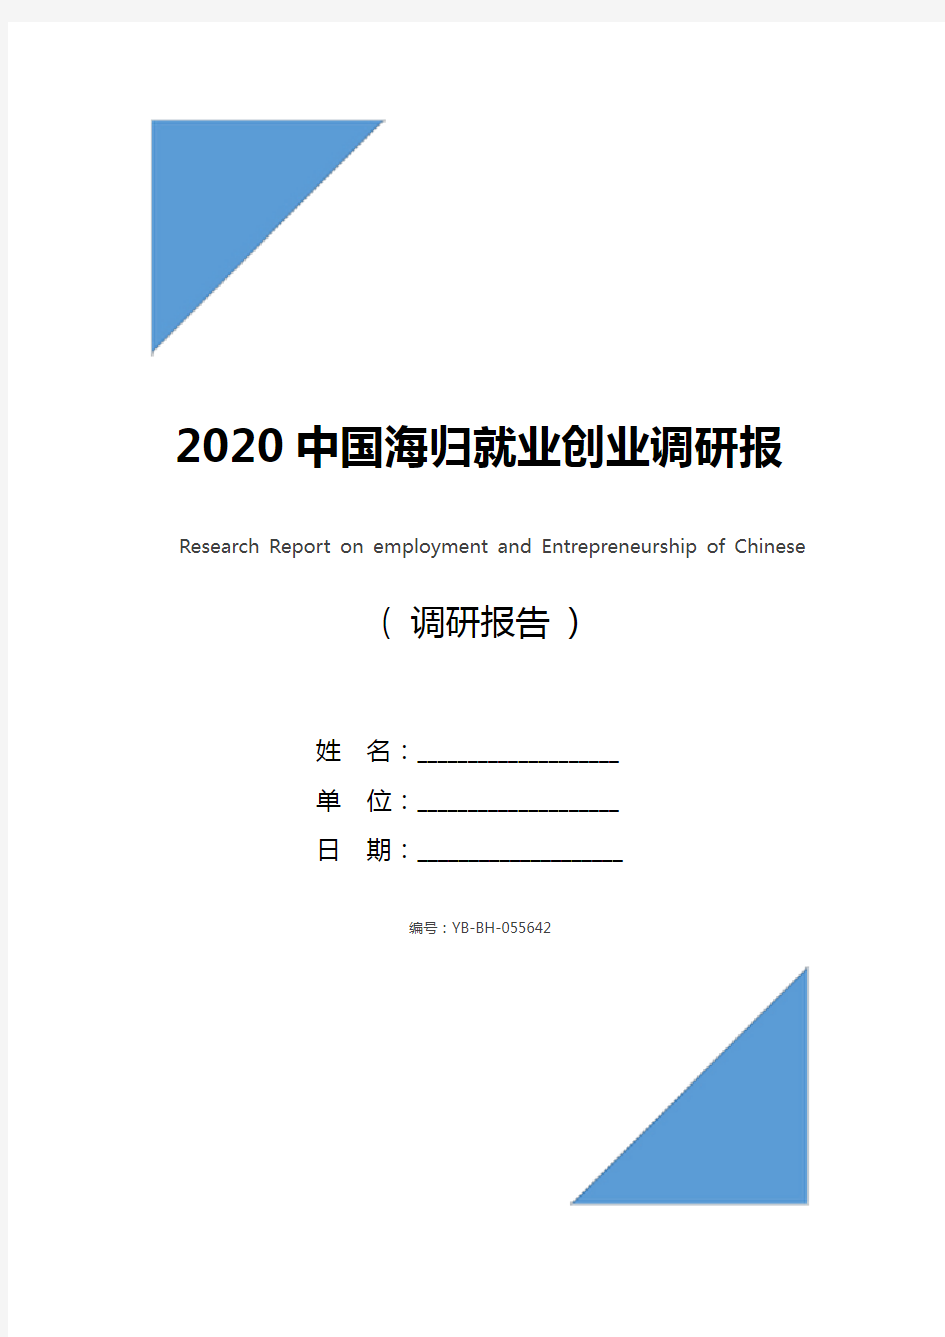 2020中国海归就业创业调研报告